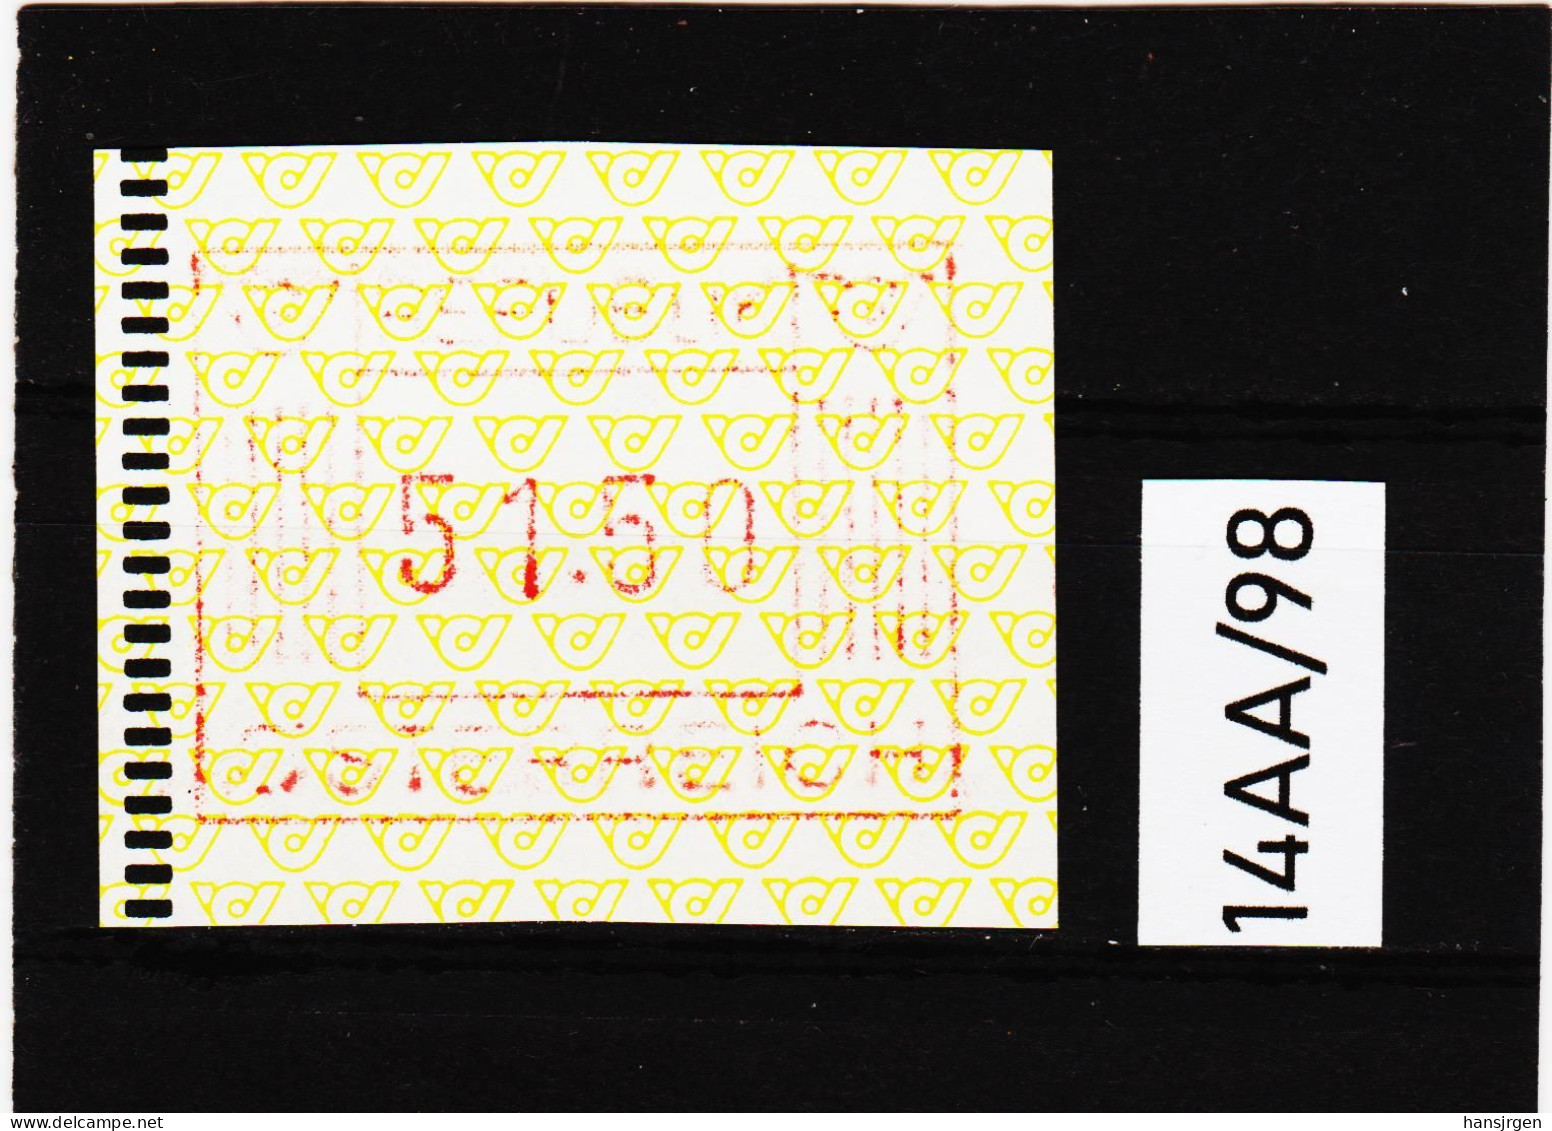 14AA/98  ÖSTERREICH 1983 AUTOMATENMARKEN 1. AUSGABE  51,50 SCHILLING   ** Postfrisch - Machine Labels [ATM]